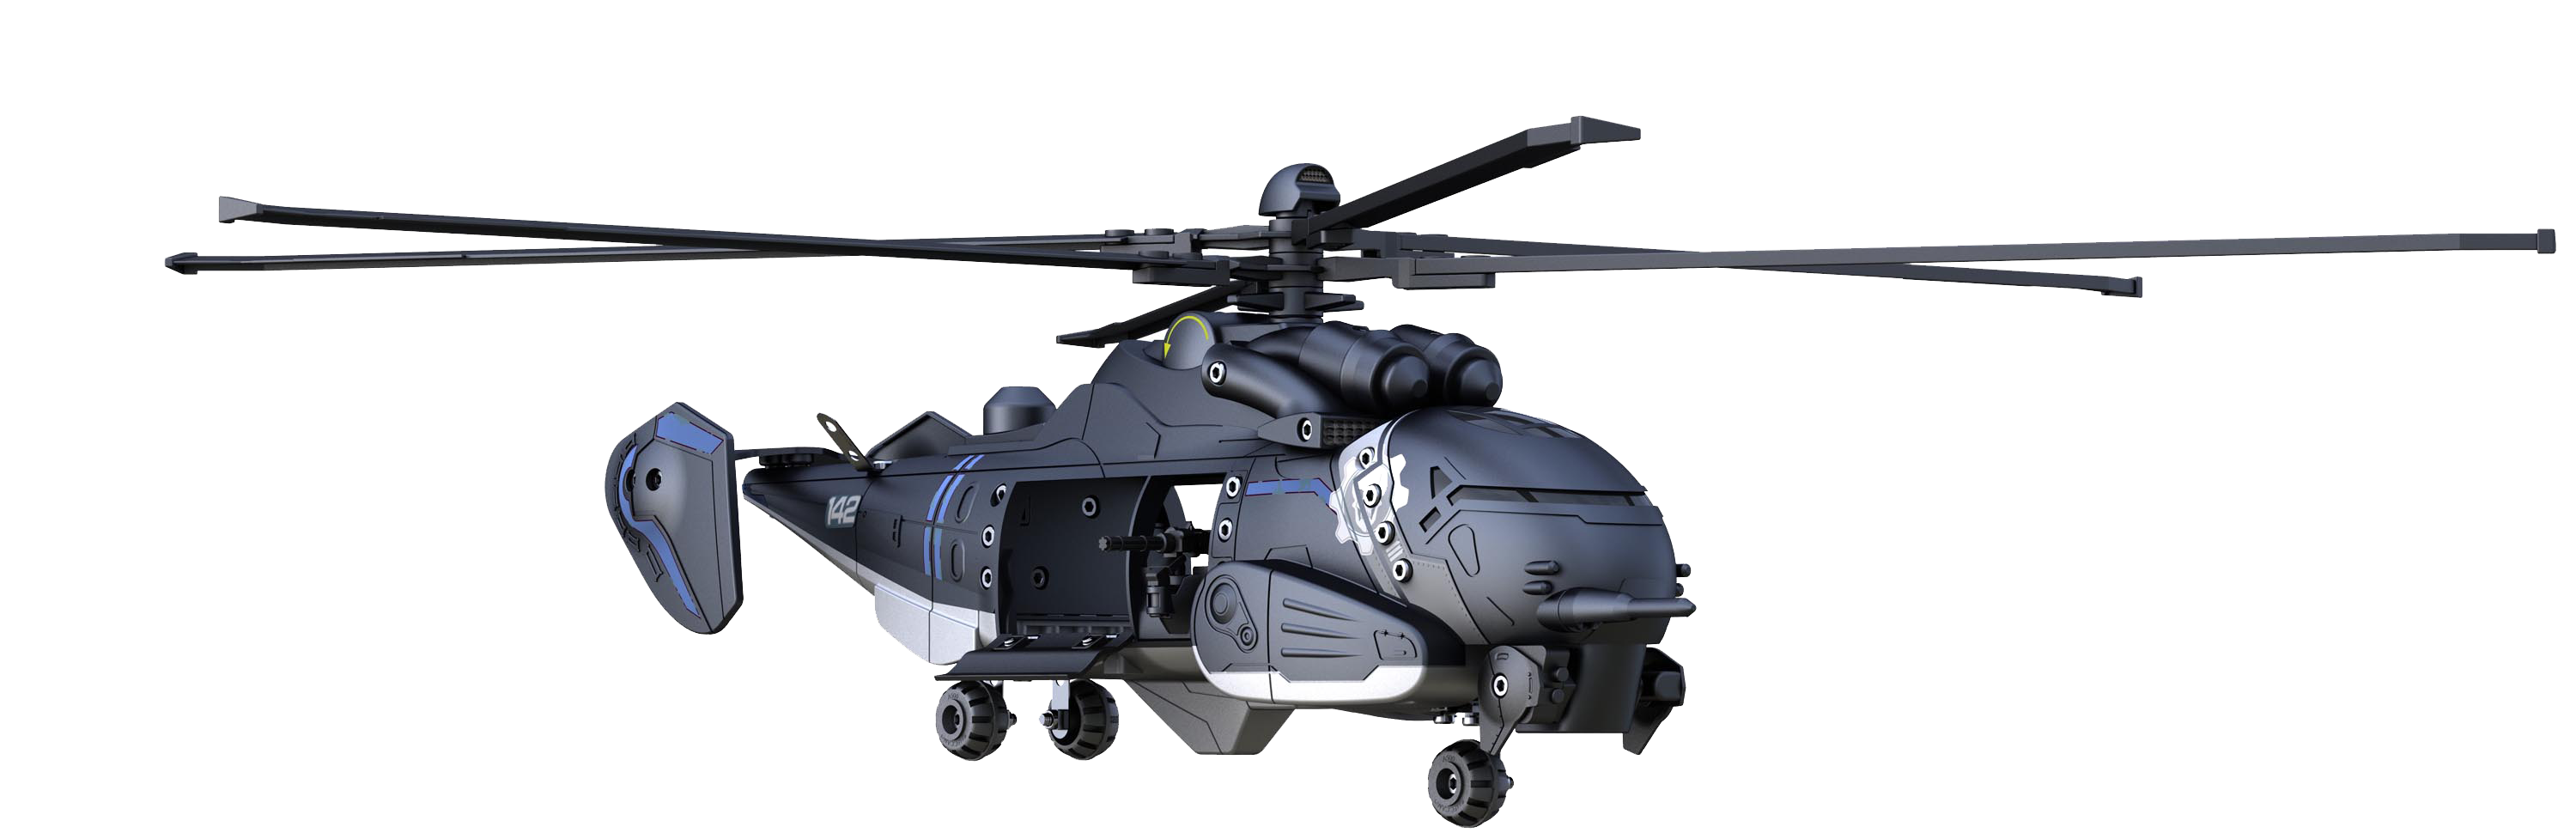 Imagem PNG gratuita de helicóptero do exército